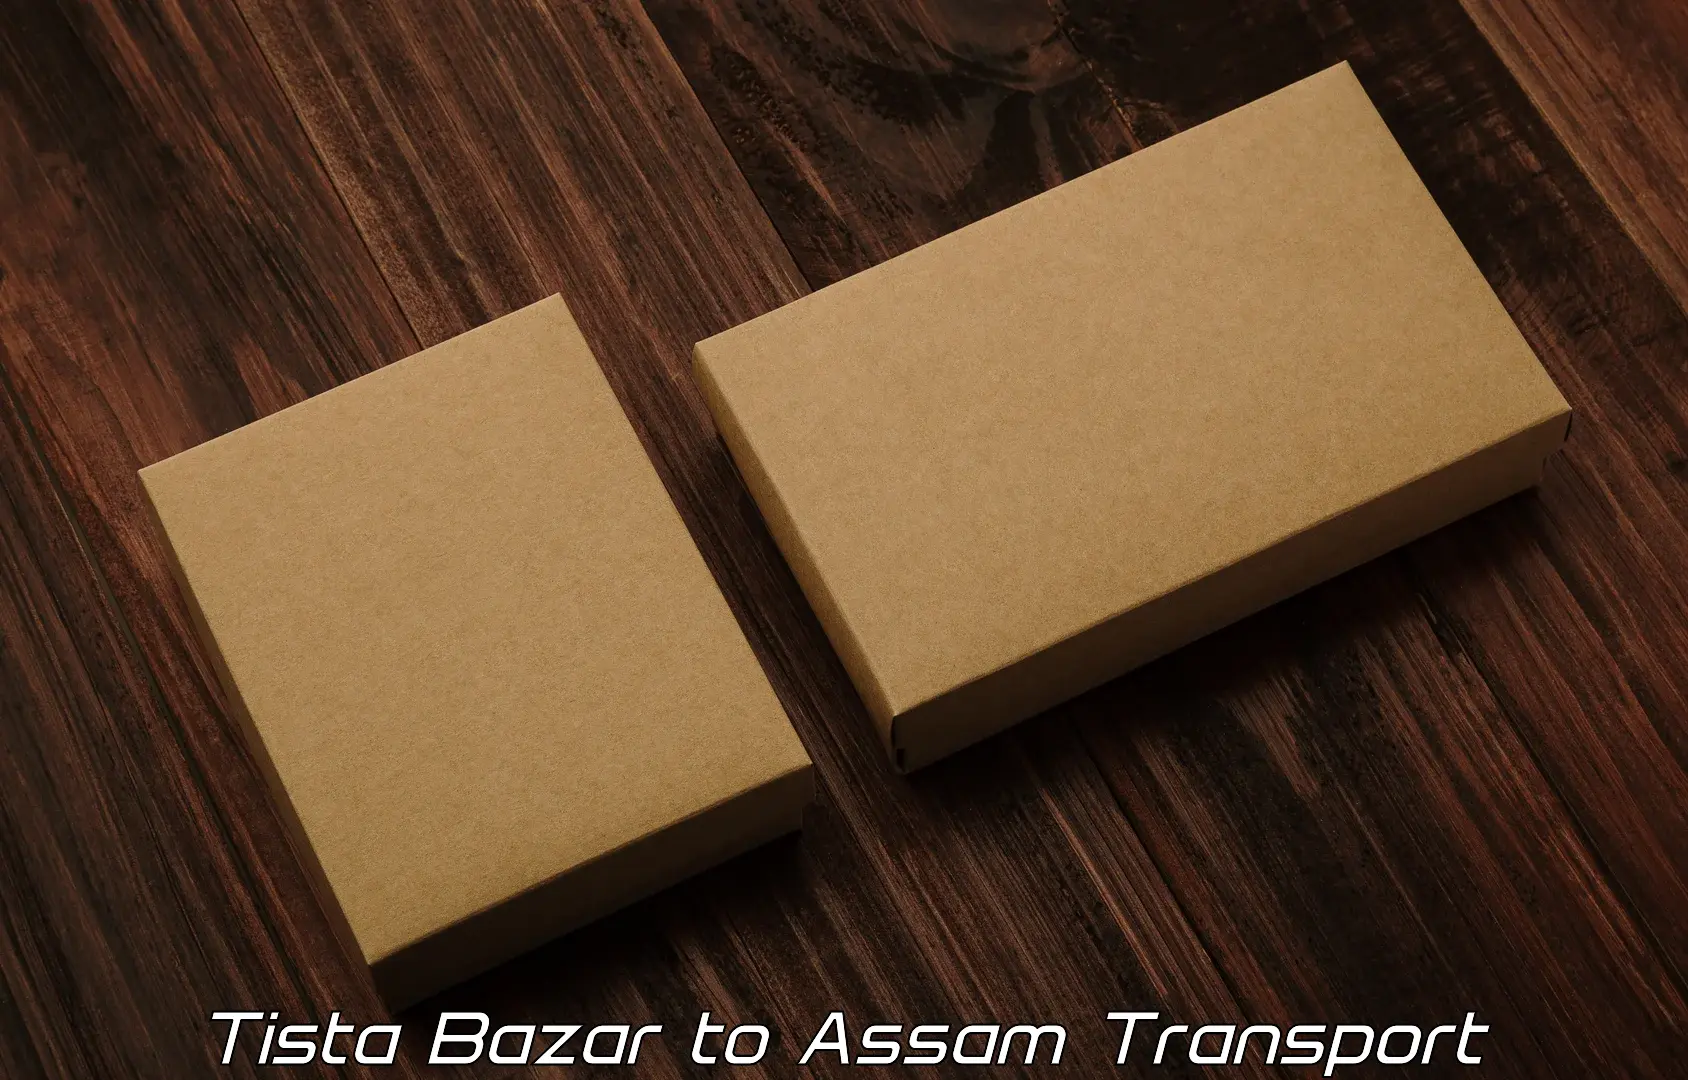 Interstate transport services Tista Bazar to Tezpur University